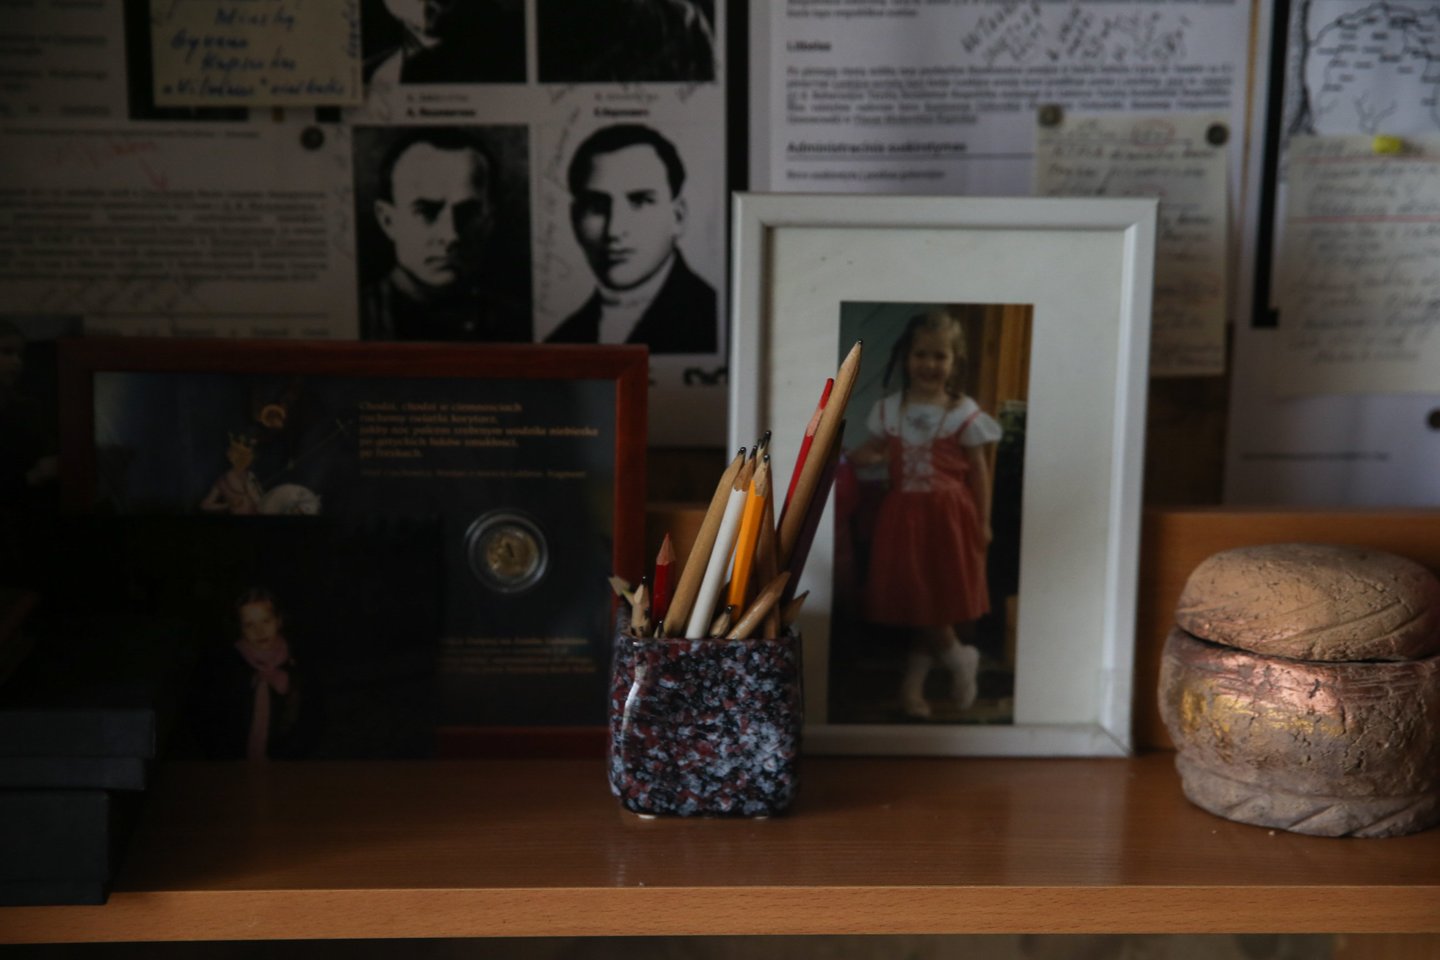 Virš darbo stalo – pieštukai, dukters Adolfinos nuotraukos, jubiliejinė 5 zlotų moneta.<br>R.Danisevičiaus nuotr.